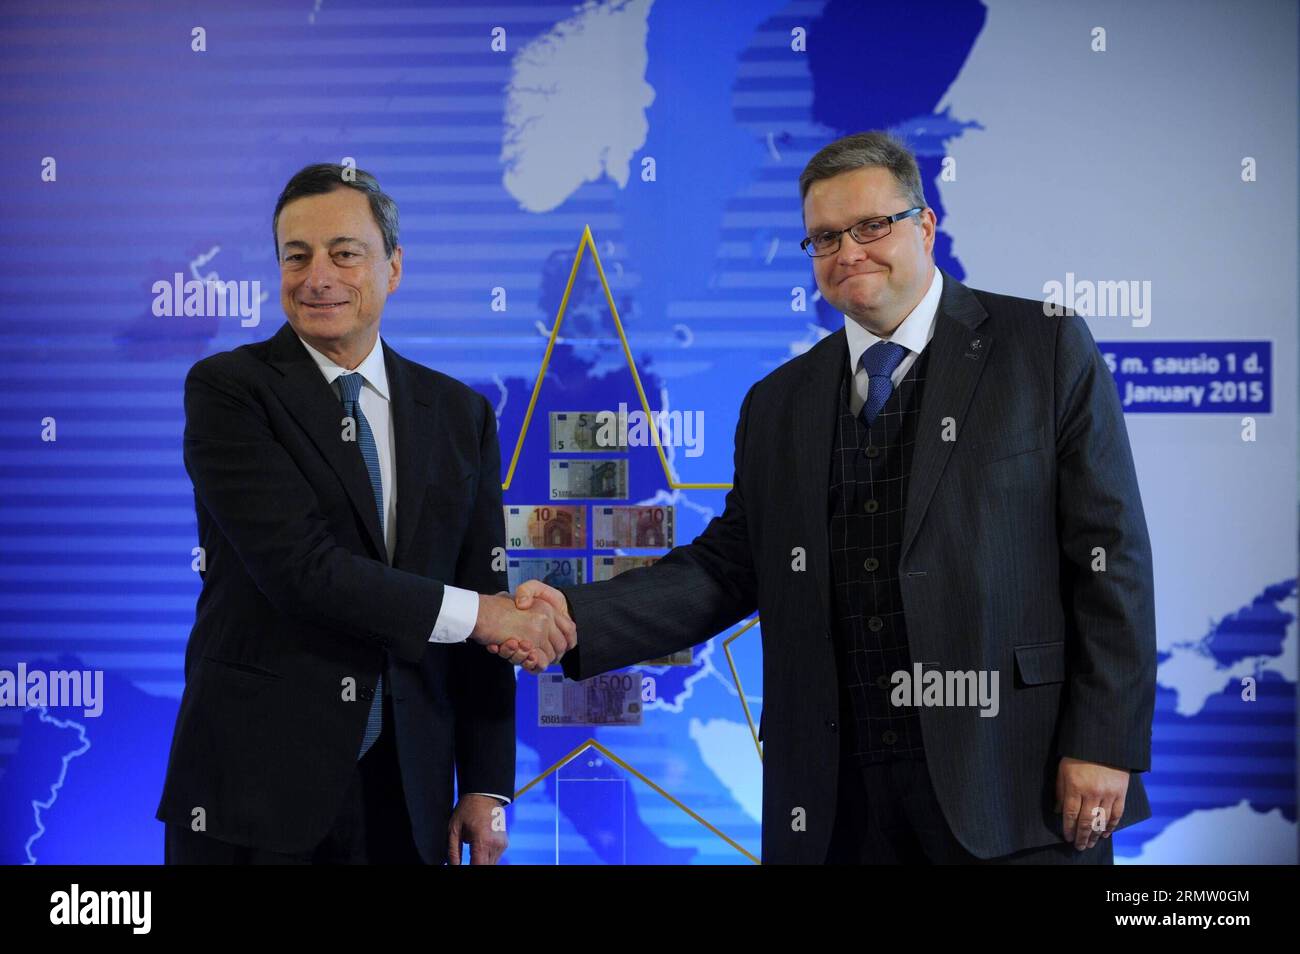 (140925) -- VILNIUS, 25. September 2014 -- Präsident Mario Draghi (L) der Europäischen Zentralbank (EZB) und Präsident der litauischen Zentralbank Vitas Vasiliauskas in Vilnius, Litauen, am 25. September 2014. EZB-Präsident Mario Draghi überreichte hier am Donnerstag einen Euro Star an den Vorsitzenden der litauischen Zentralbank, ein Zeichen, das Litauens Mitgliedschaft im Euro-Währungsgebiet symbolisiert. ) (lmz) LUTHUANIA-VILNIUS-EURO STAR AlfredasxPliadis PUBLICATIONxNOTxINxCHN Vilnius Sept 25 2014 EZB-Präsident Mario Draghi l und Präsident der litauischen Zentralbank Vitas in Vilnius Litauen ZUR SE Stockfoto